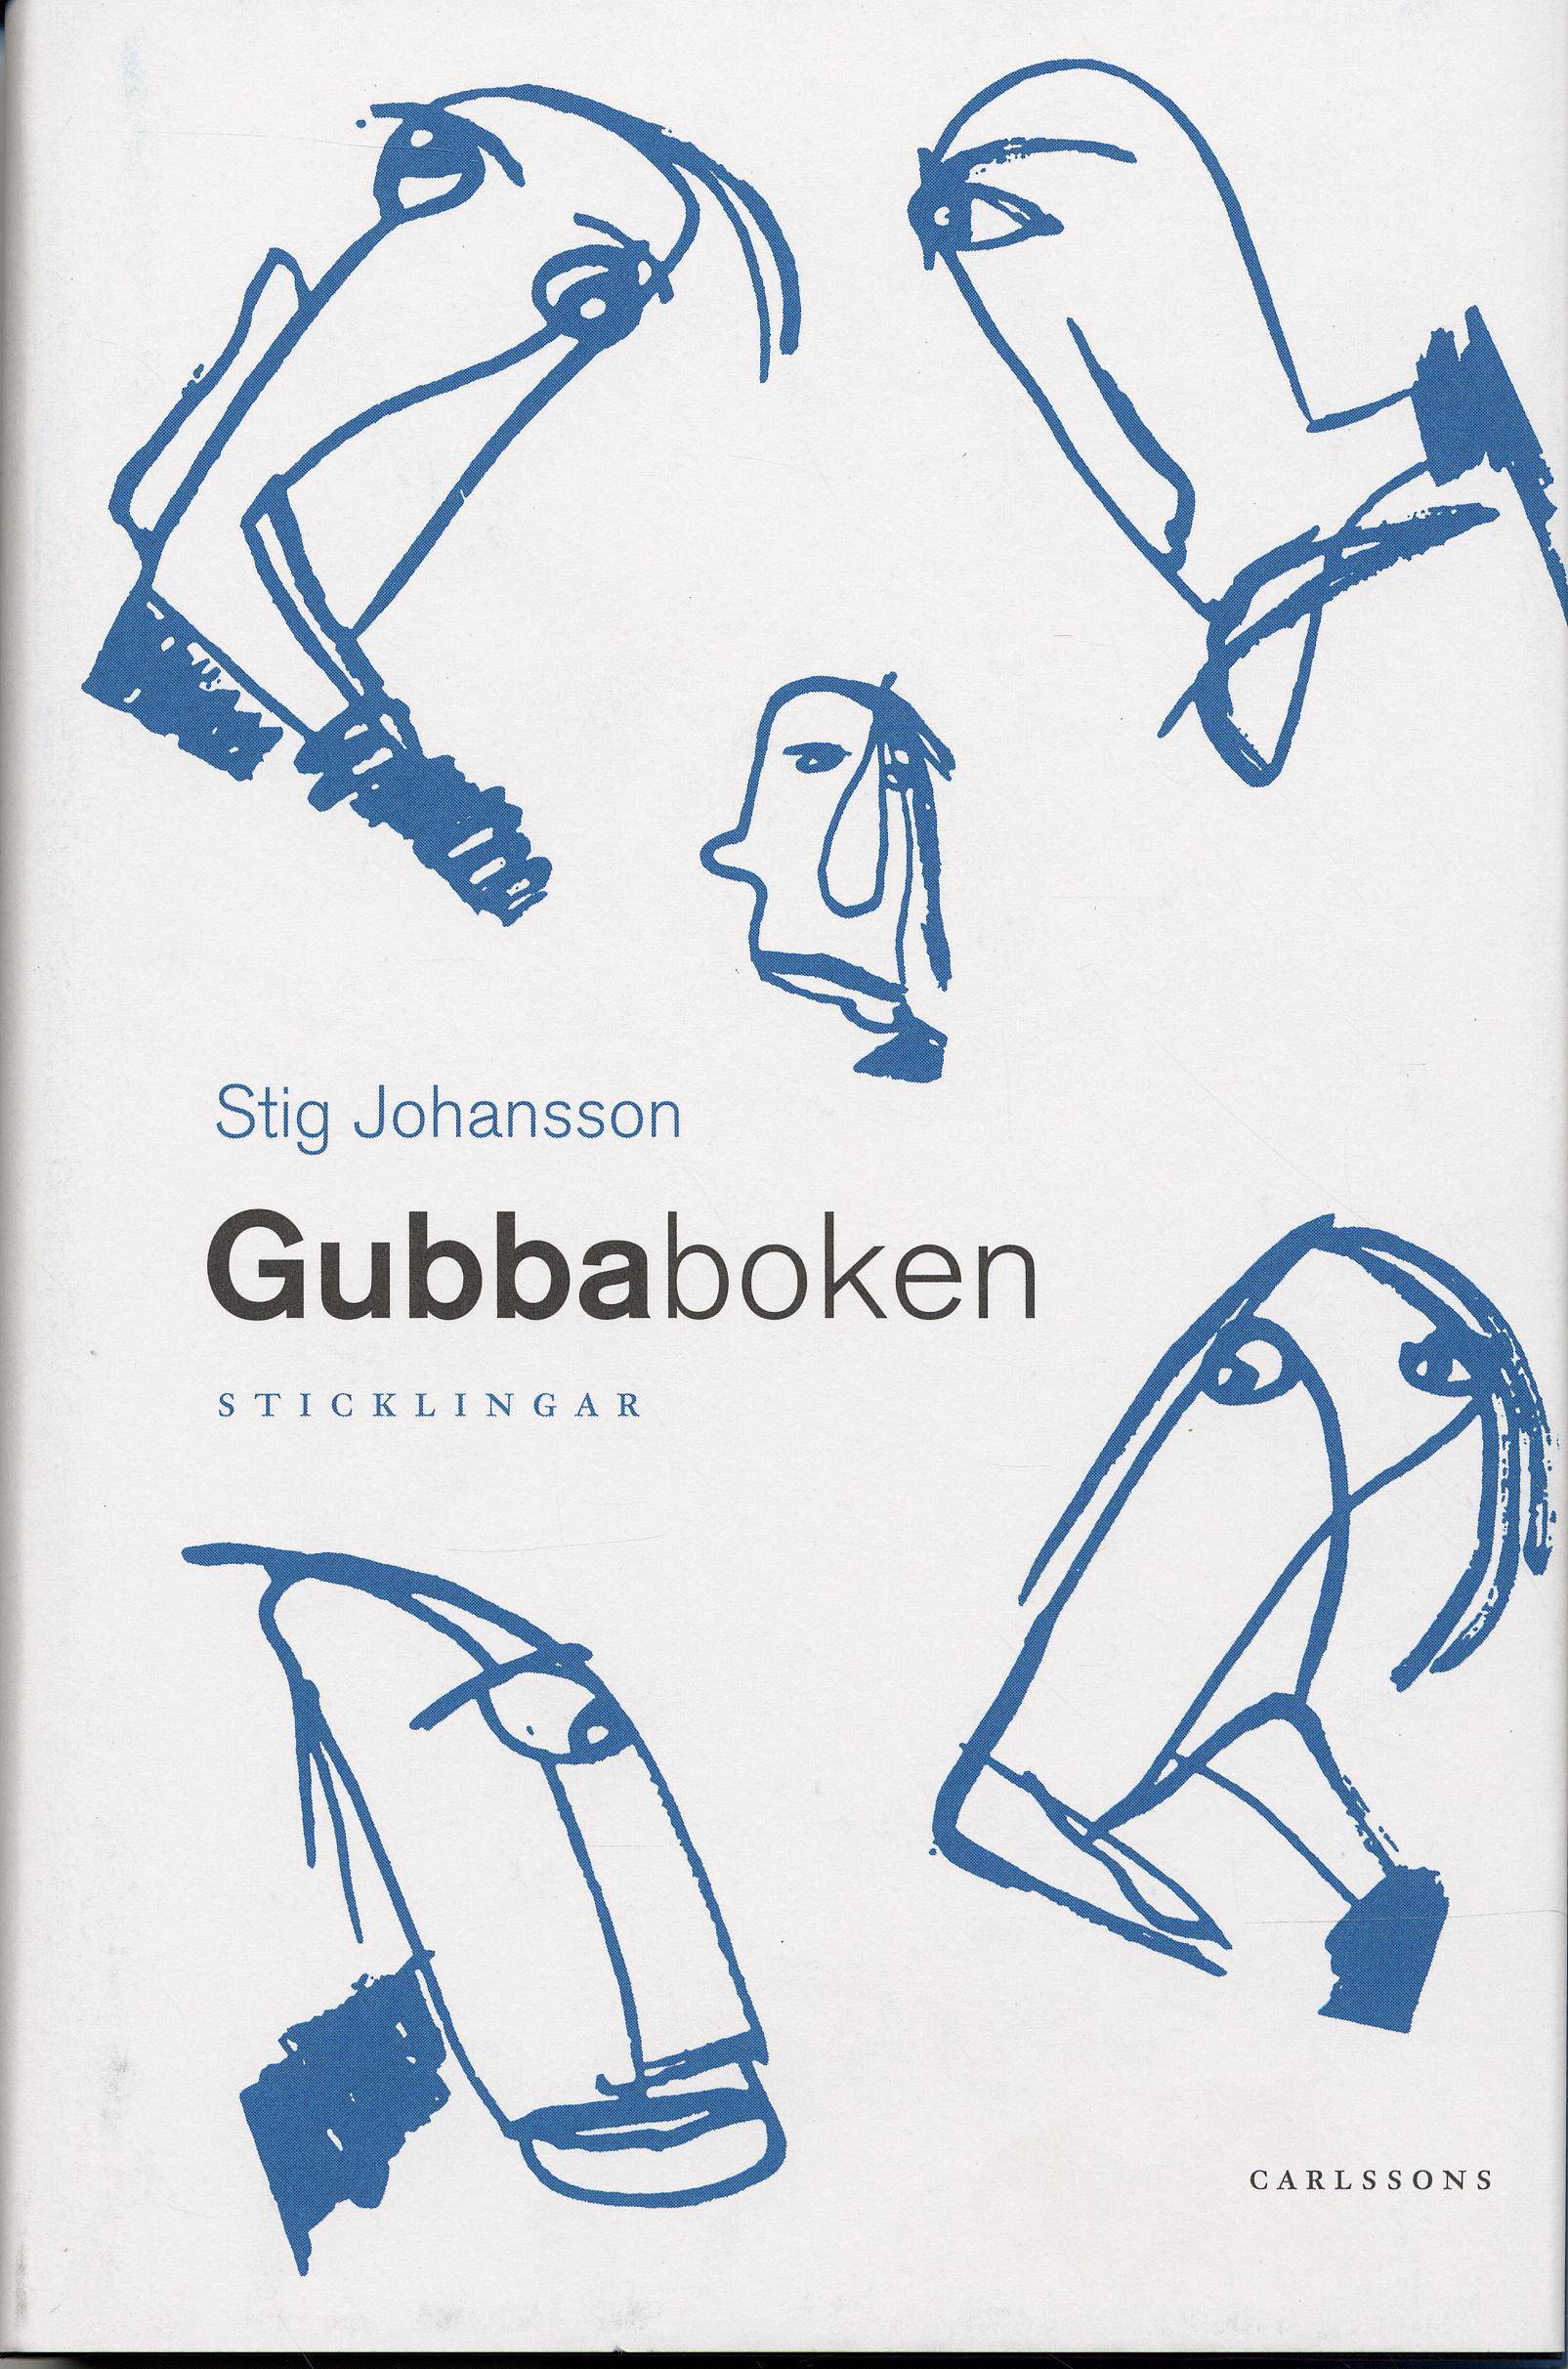 Gubbaboken - sticklingar